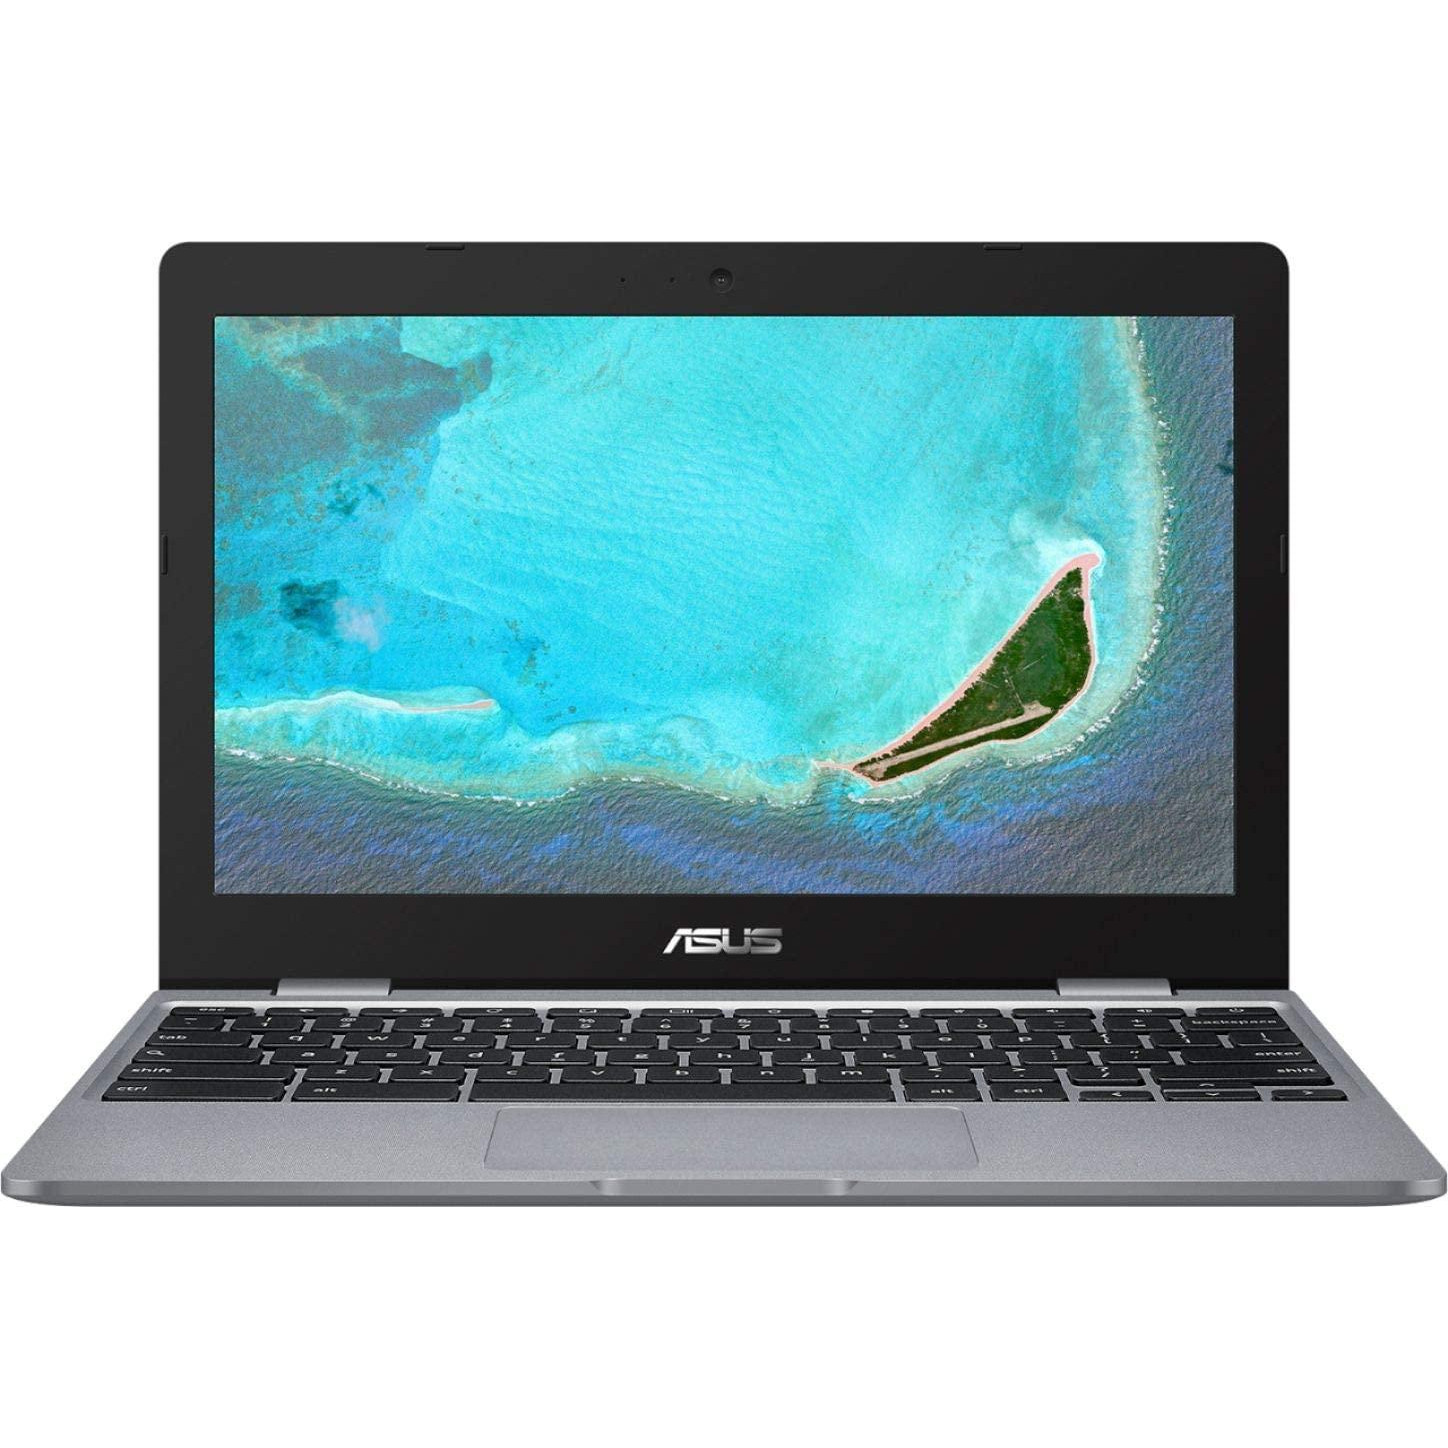 ASUS Chromebook CX22NA (CX22NA-211.BB01) - зображення 1